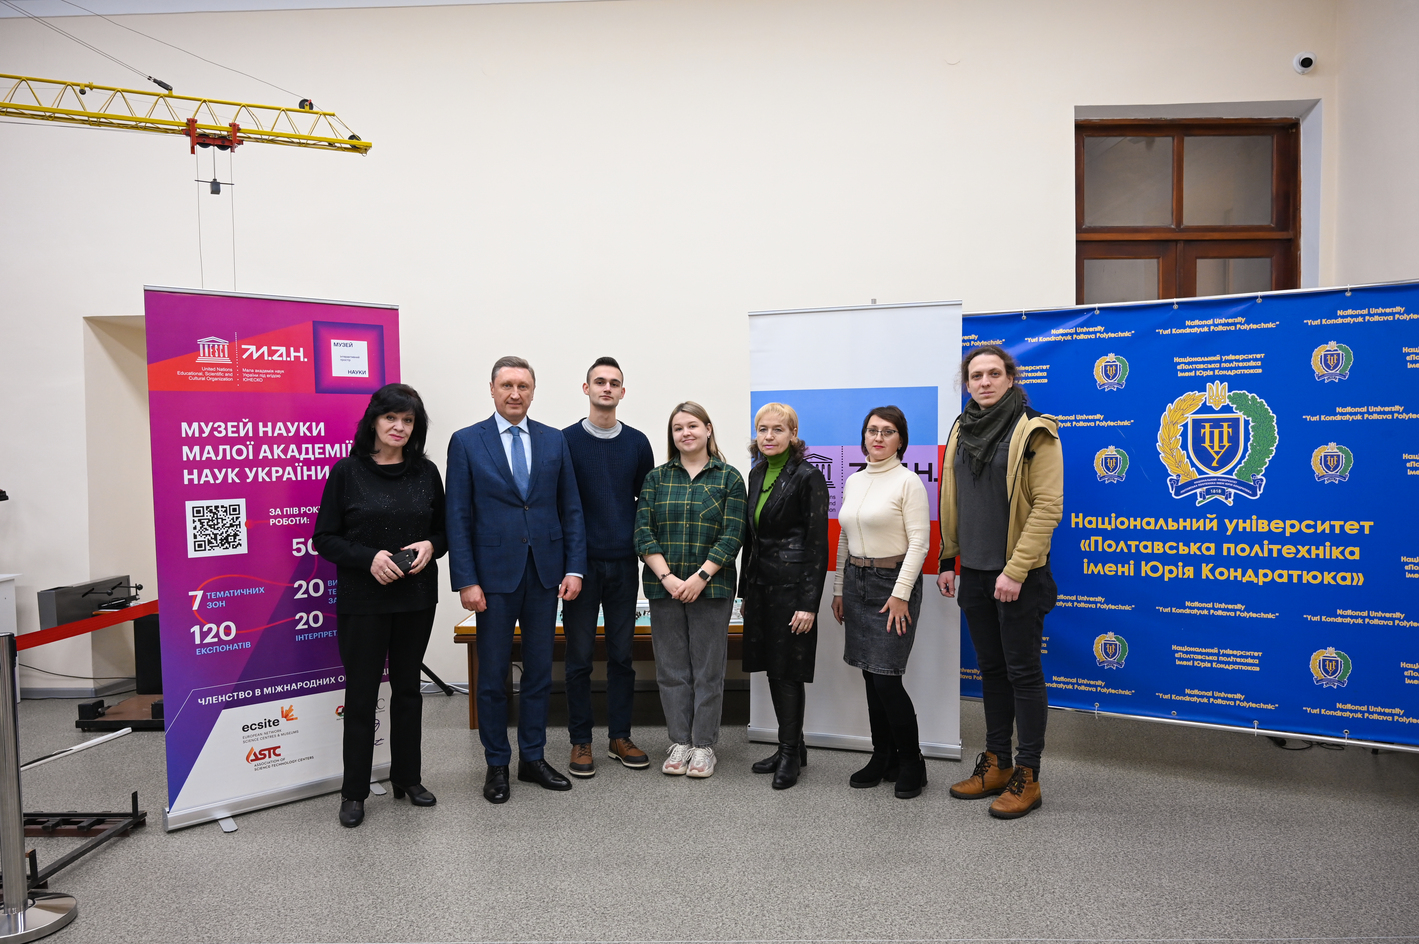 Полтавська політехніка підписала угоду про науково-освітню співпрацю з Музеєм науки МАН України